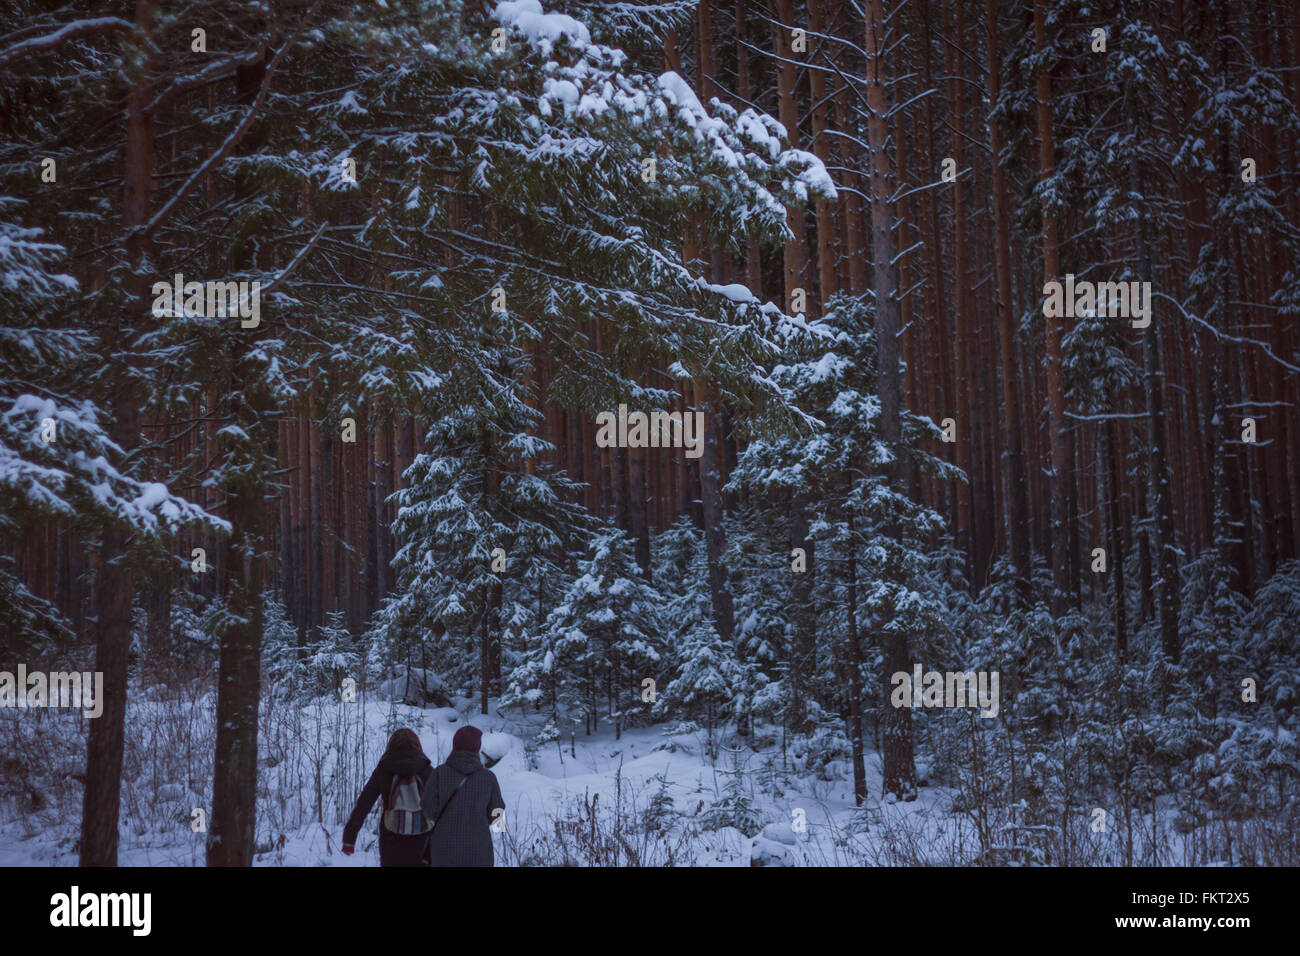 Caucasian women walking in snowy forest Stock Photo